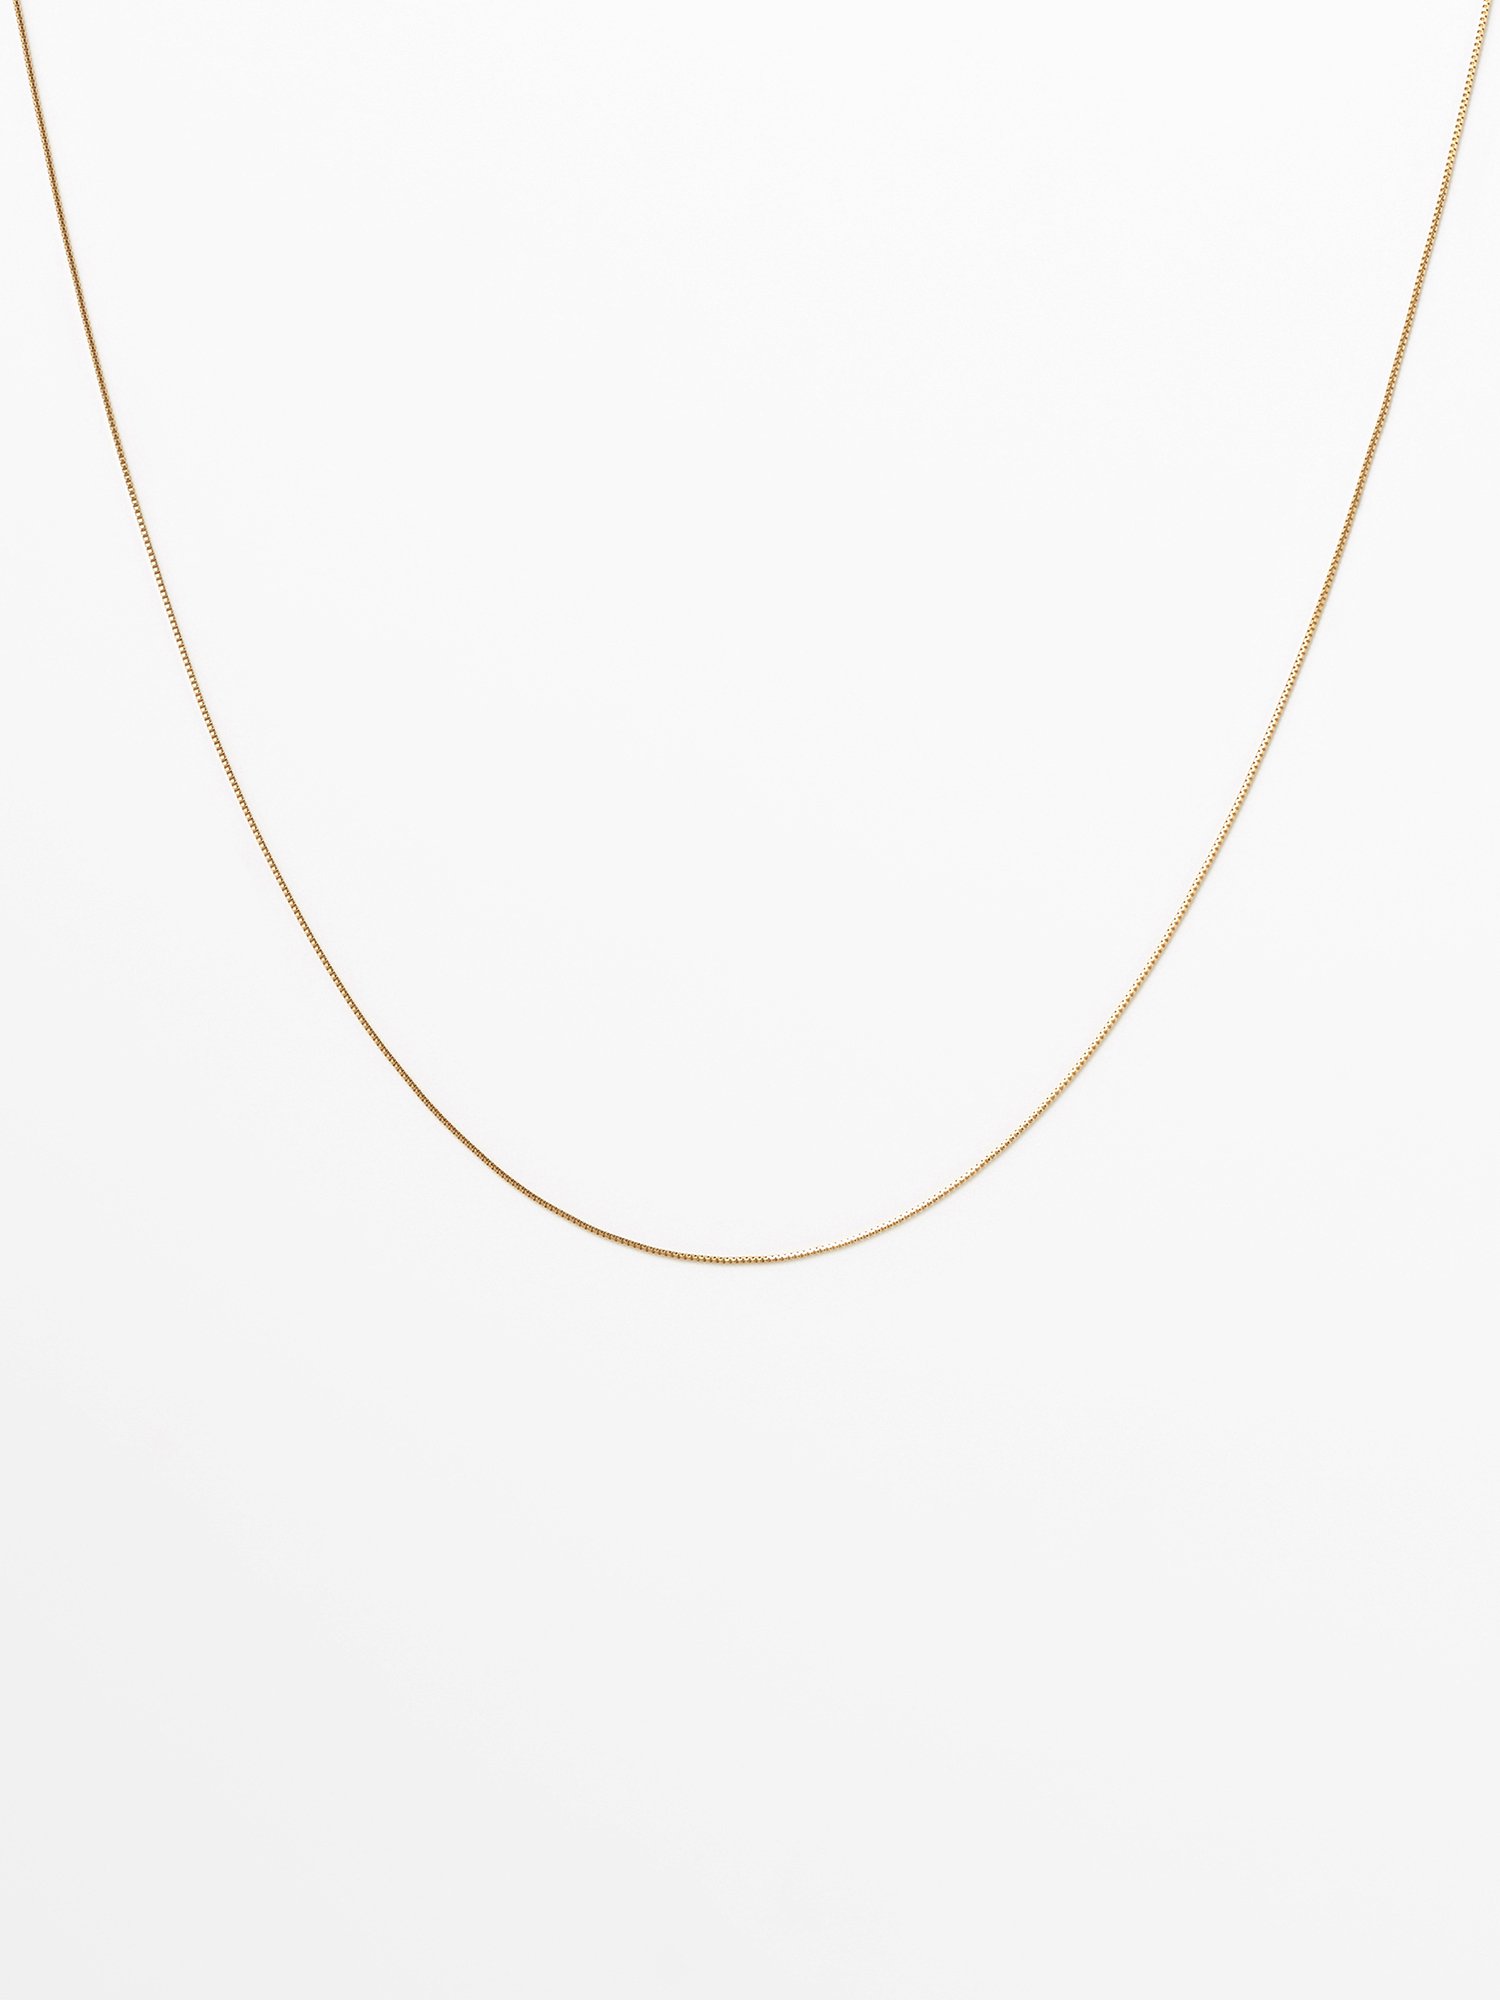  SOPHISTICATED VINTAGE / Gold line necklace / 380mm